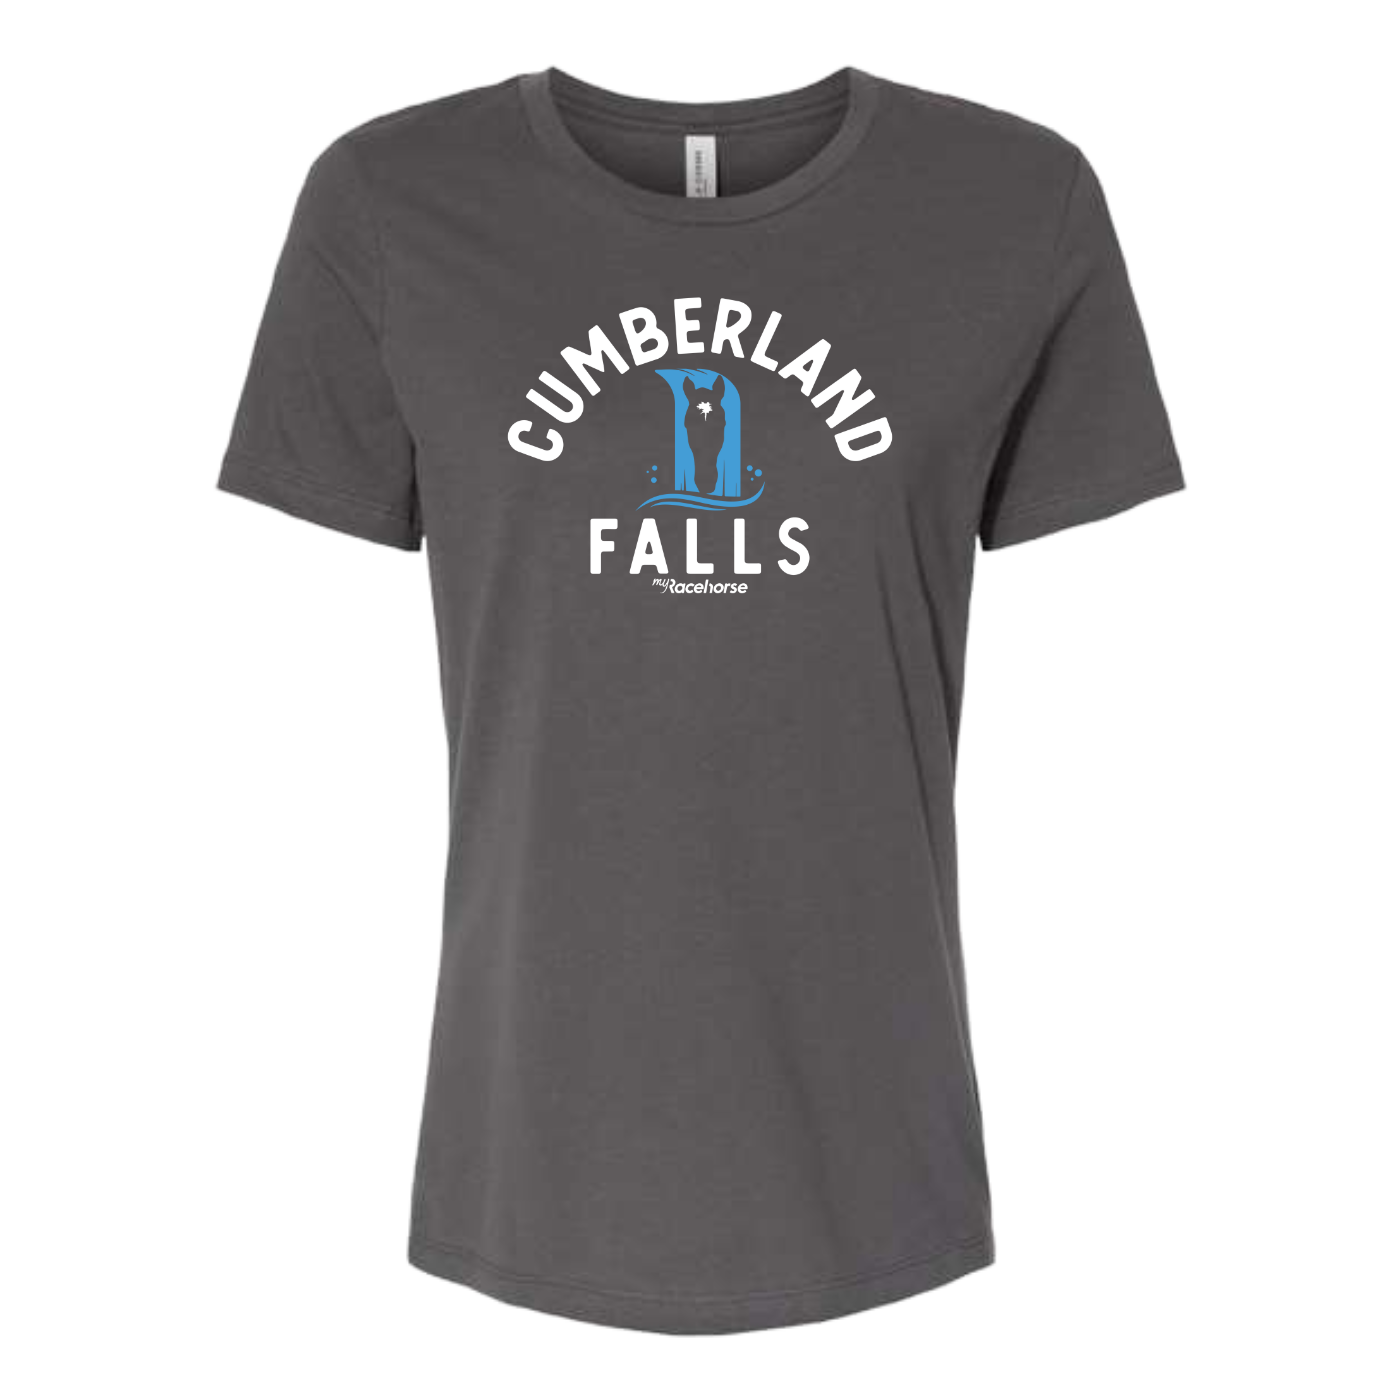 Cumberland Falls Women's SS T Shirt